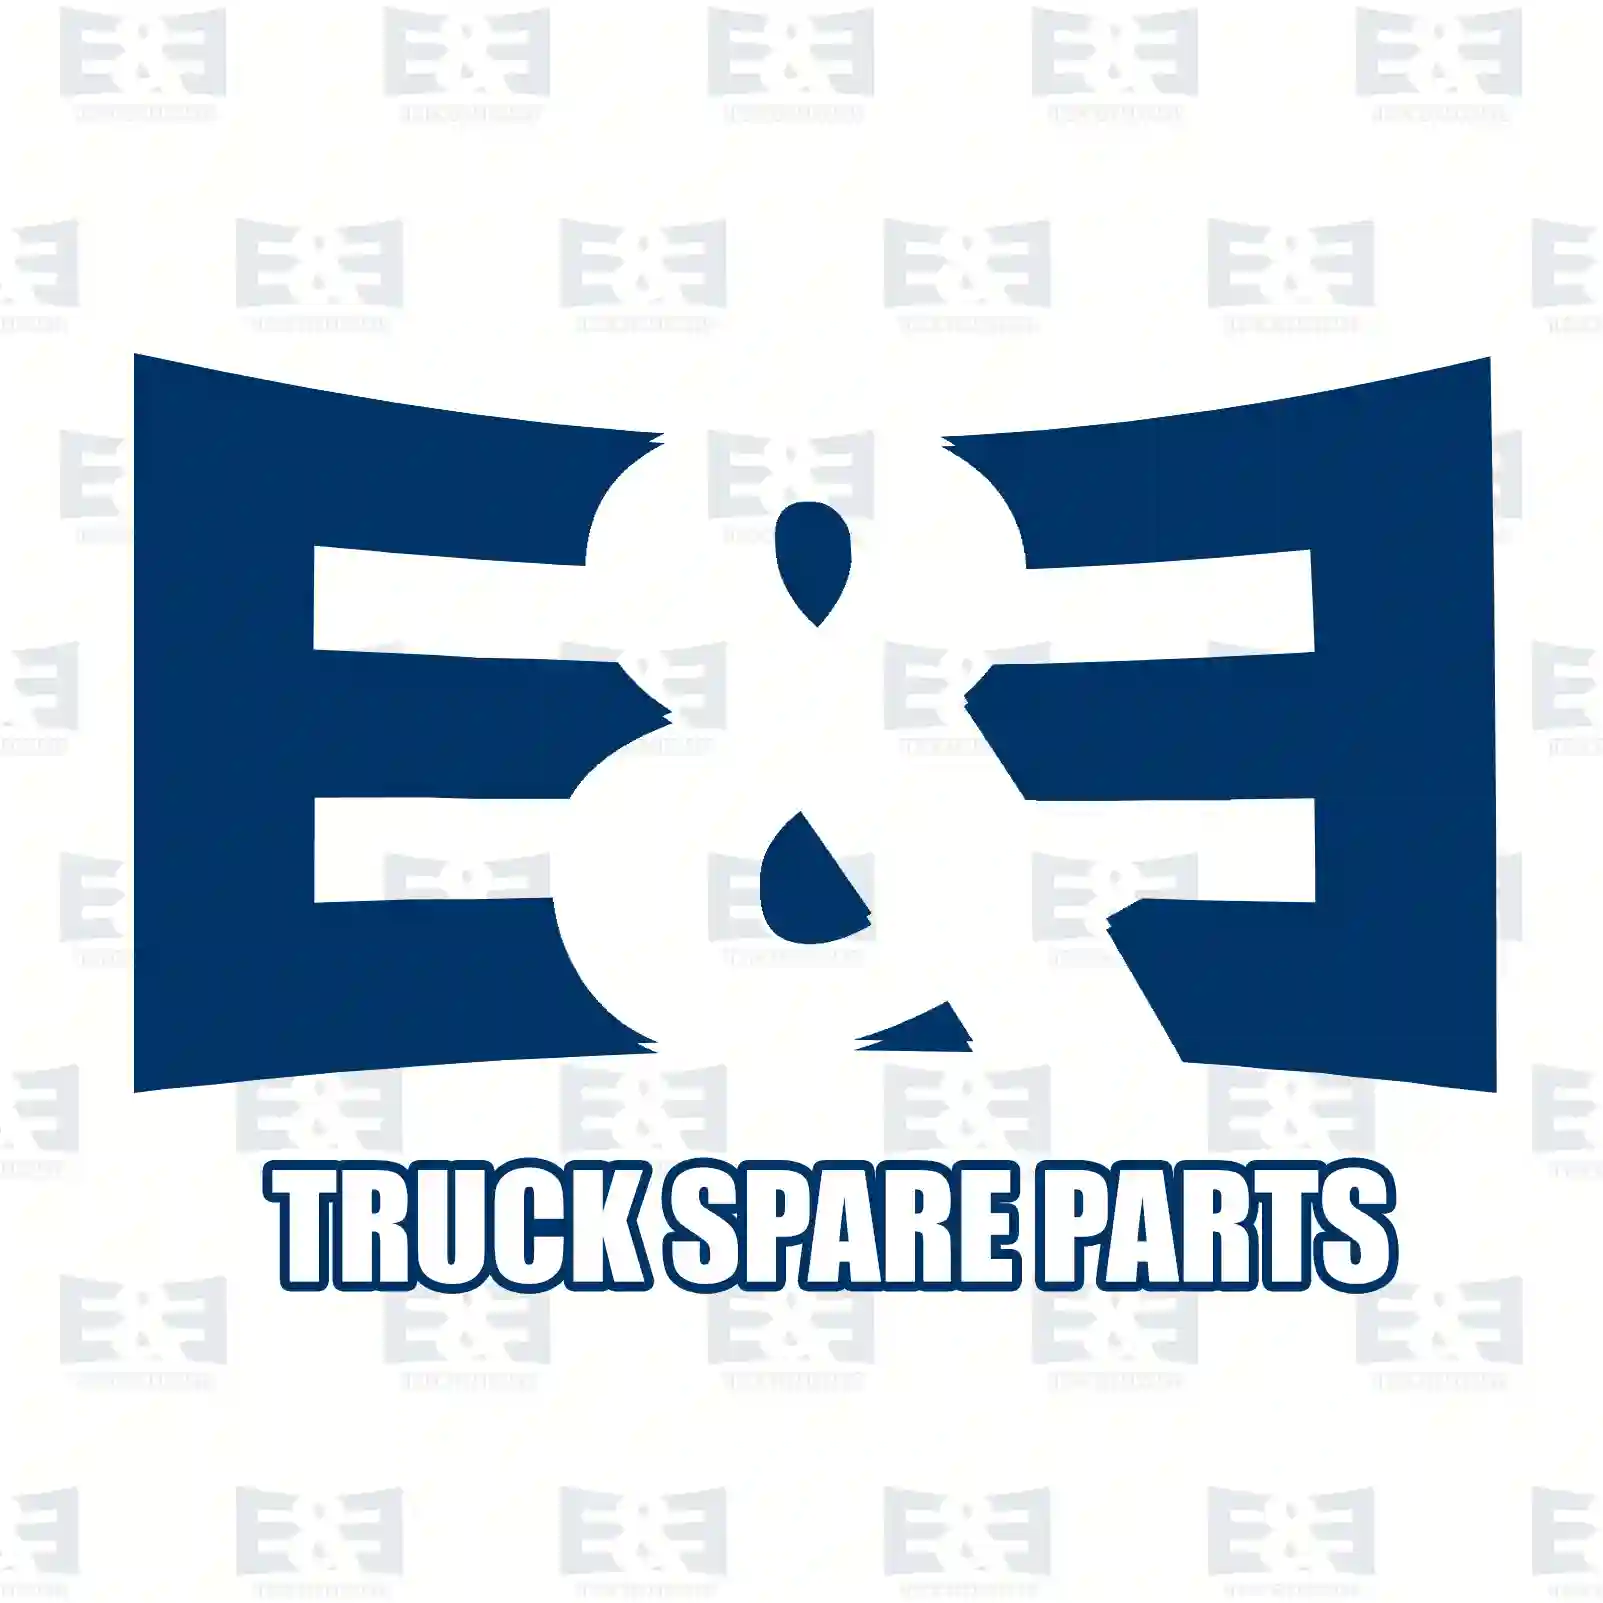 Gearbox mounting, 2E2279221, 3C11-7M125-AB, 4519498 ||  2E2279221 E&E Truck Spare Parts | Truck Spare Parts, Auotomotive Spare Parts Gearbox mounting, 2E2279221, 3C11-7M125-AB, 4519498 ||  2E2279221 E&E Truck Spare Parts | Truck Spare Parts, Auotomotive Spare Parts